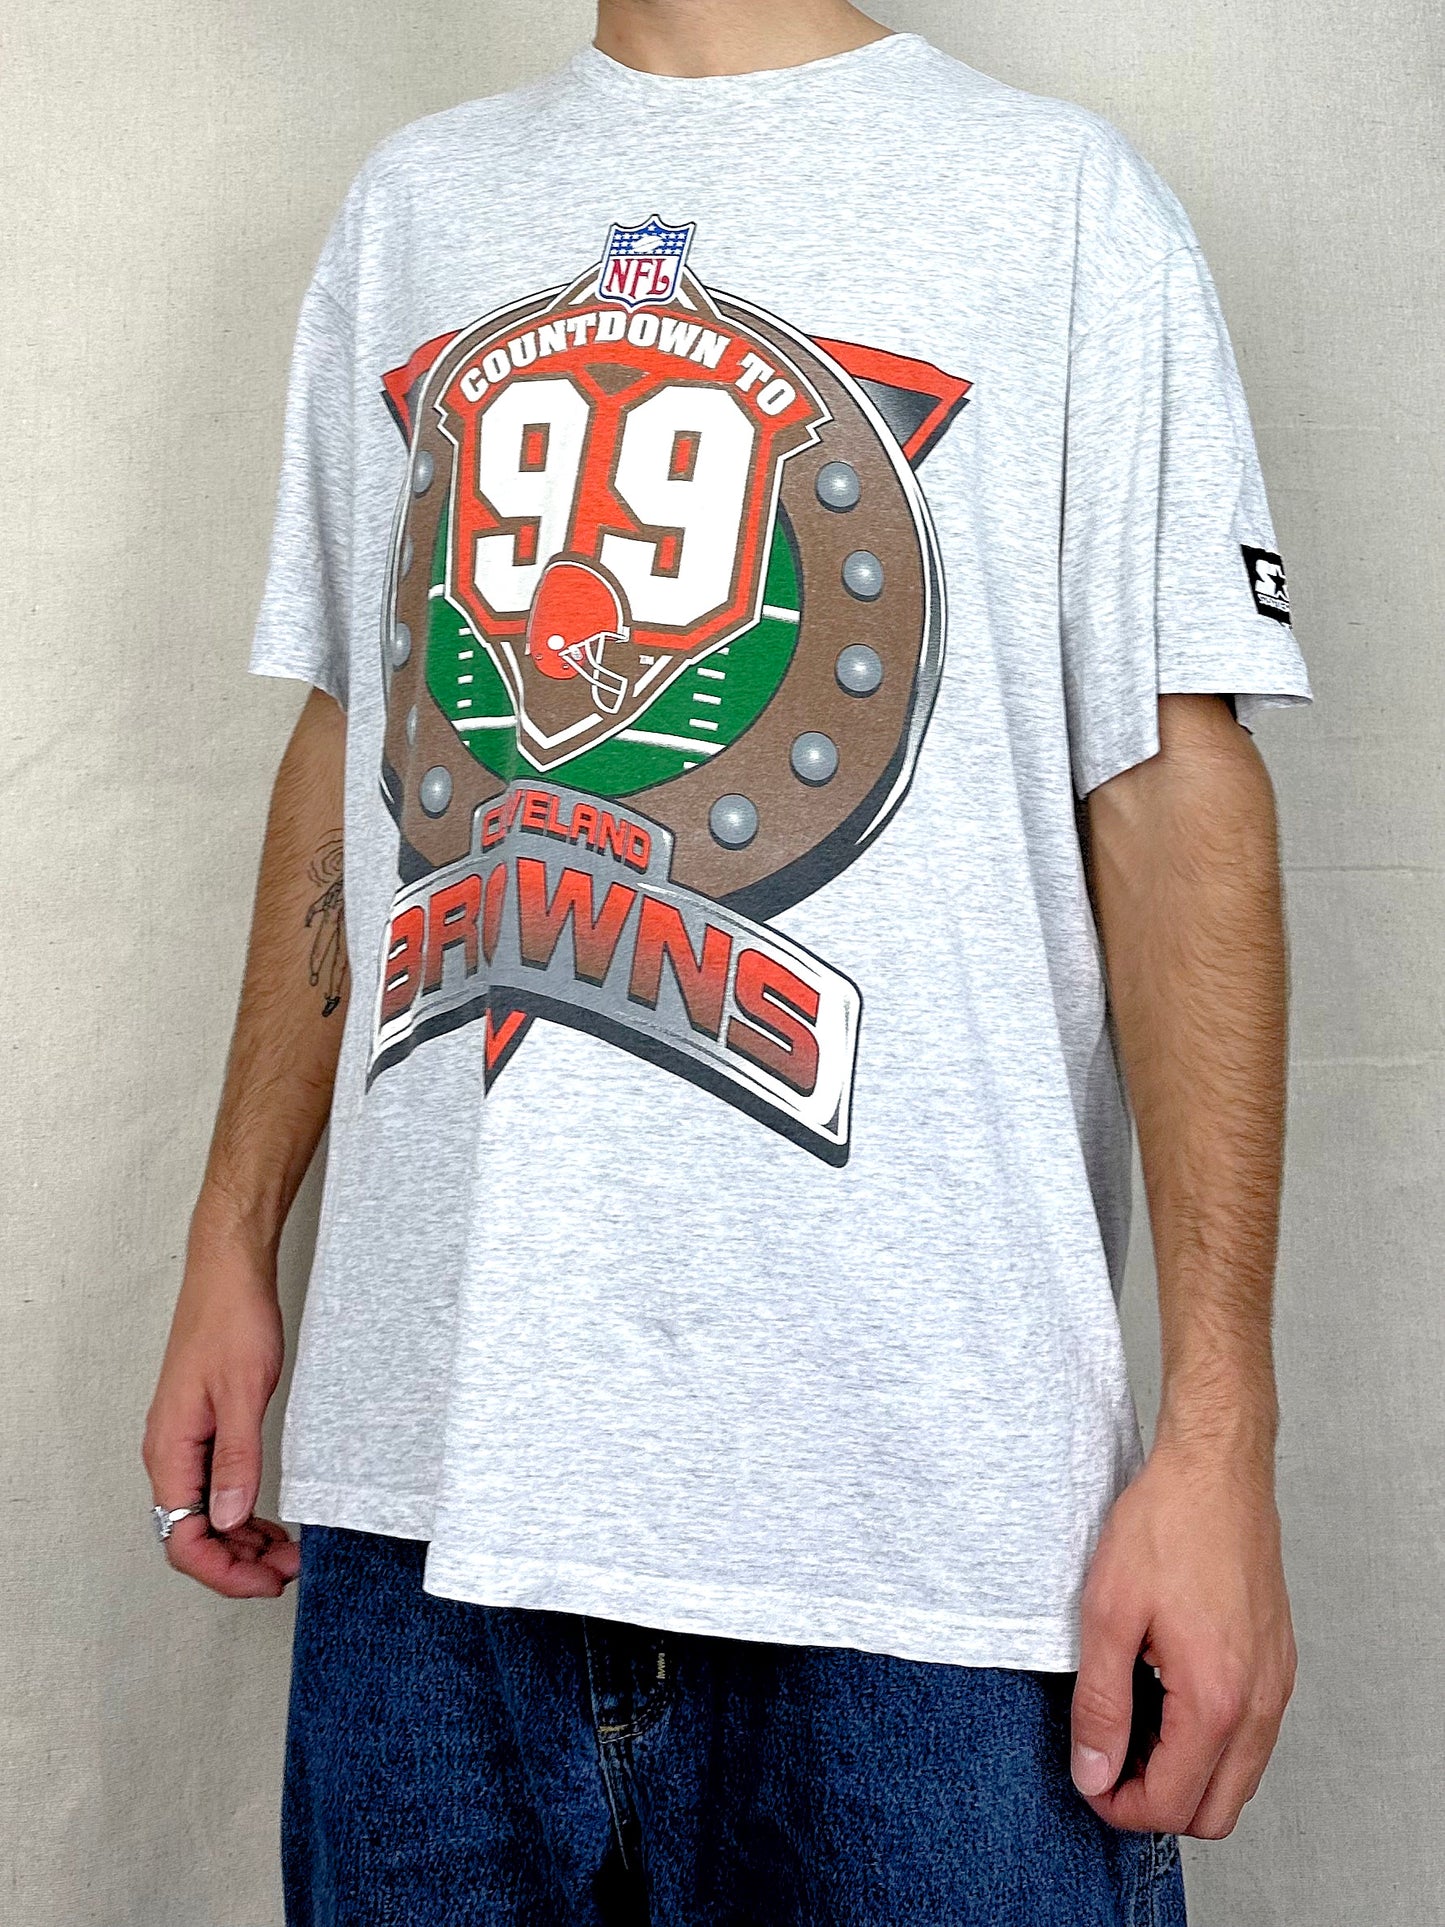 90's Cleveland Browns Starter NFL Vintage T-Shirt Size XL